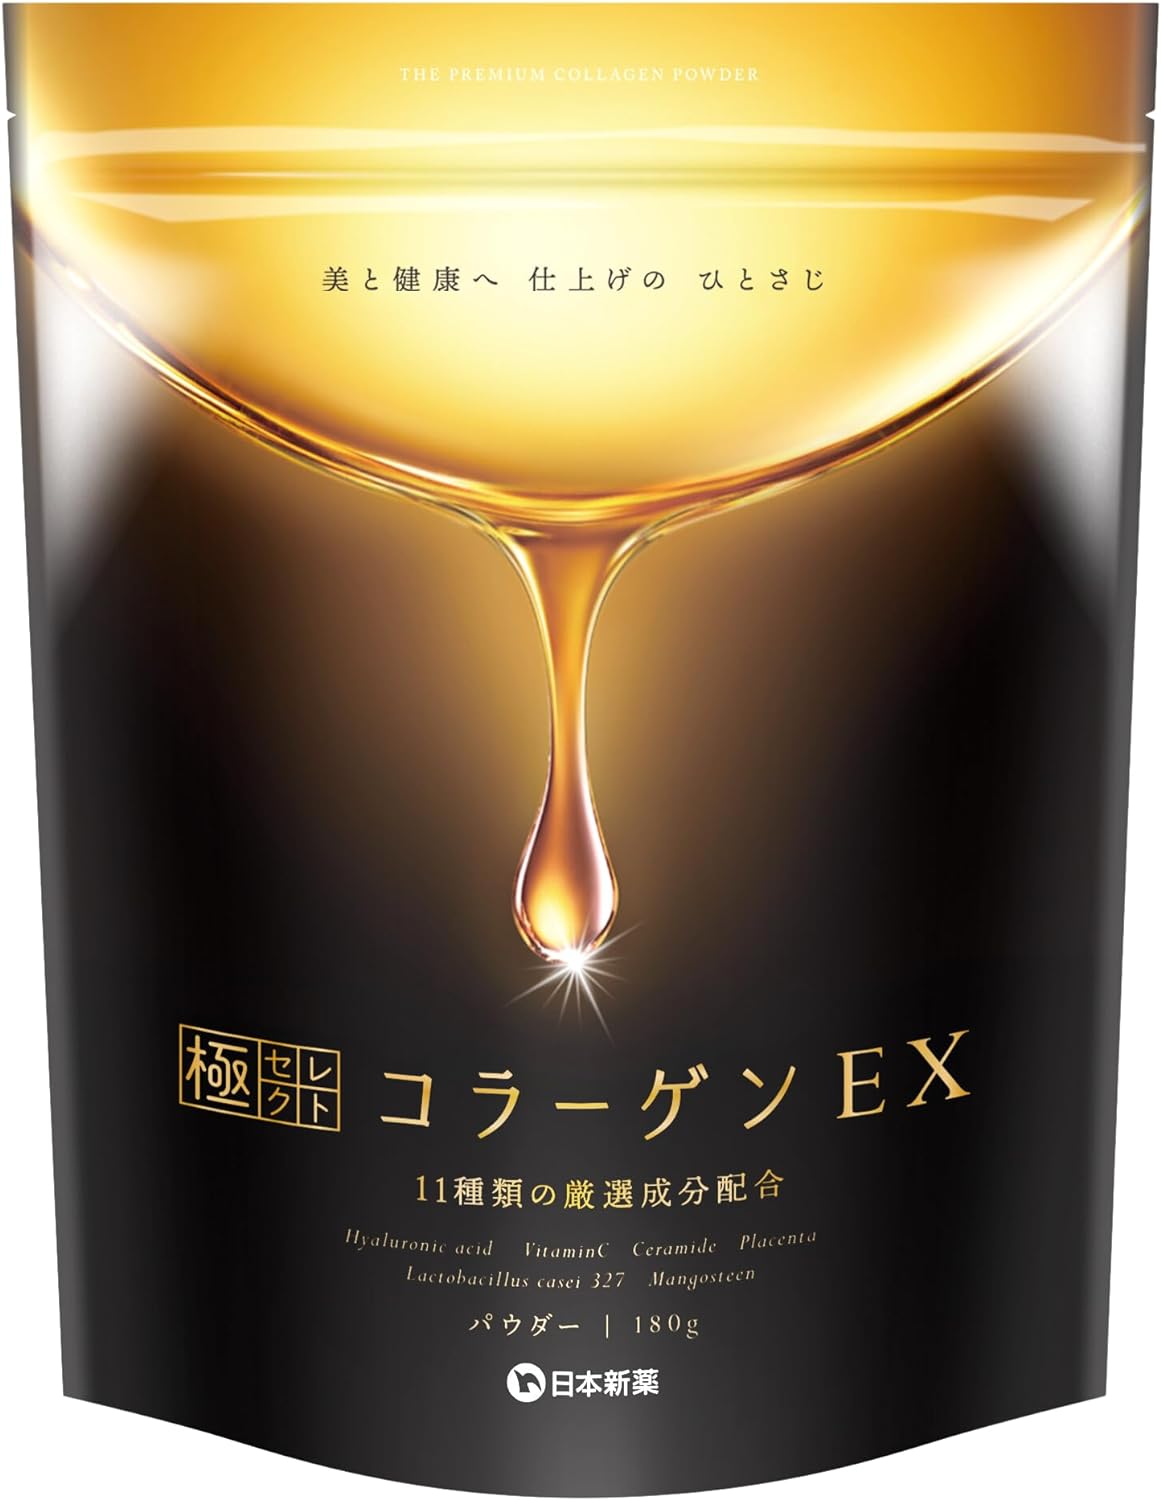 『日本の恵み 酵素GOLD(ゴールド) 200g